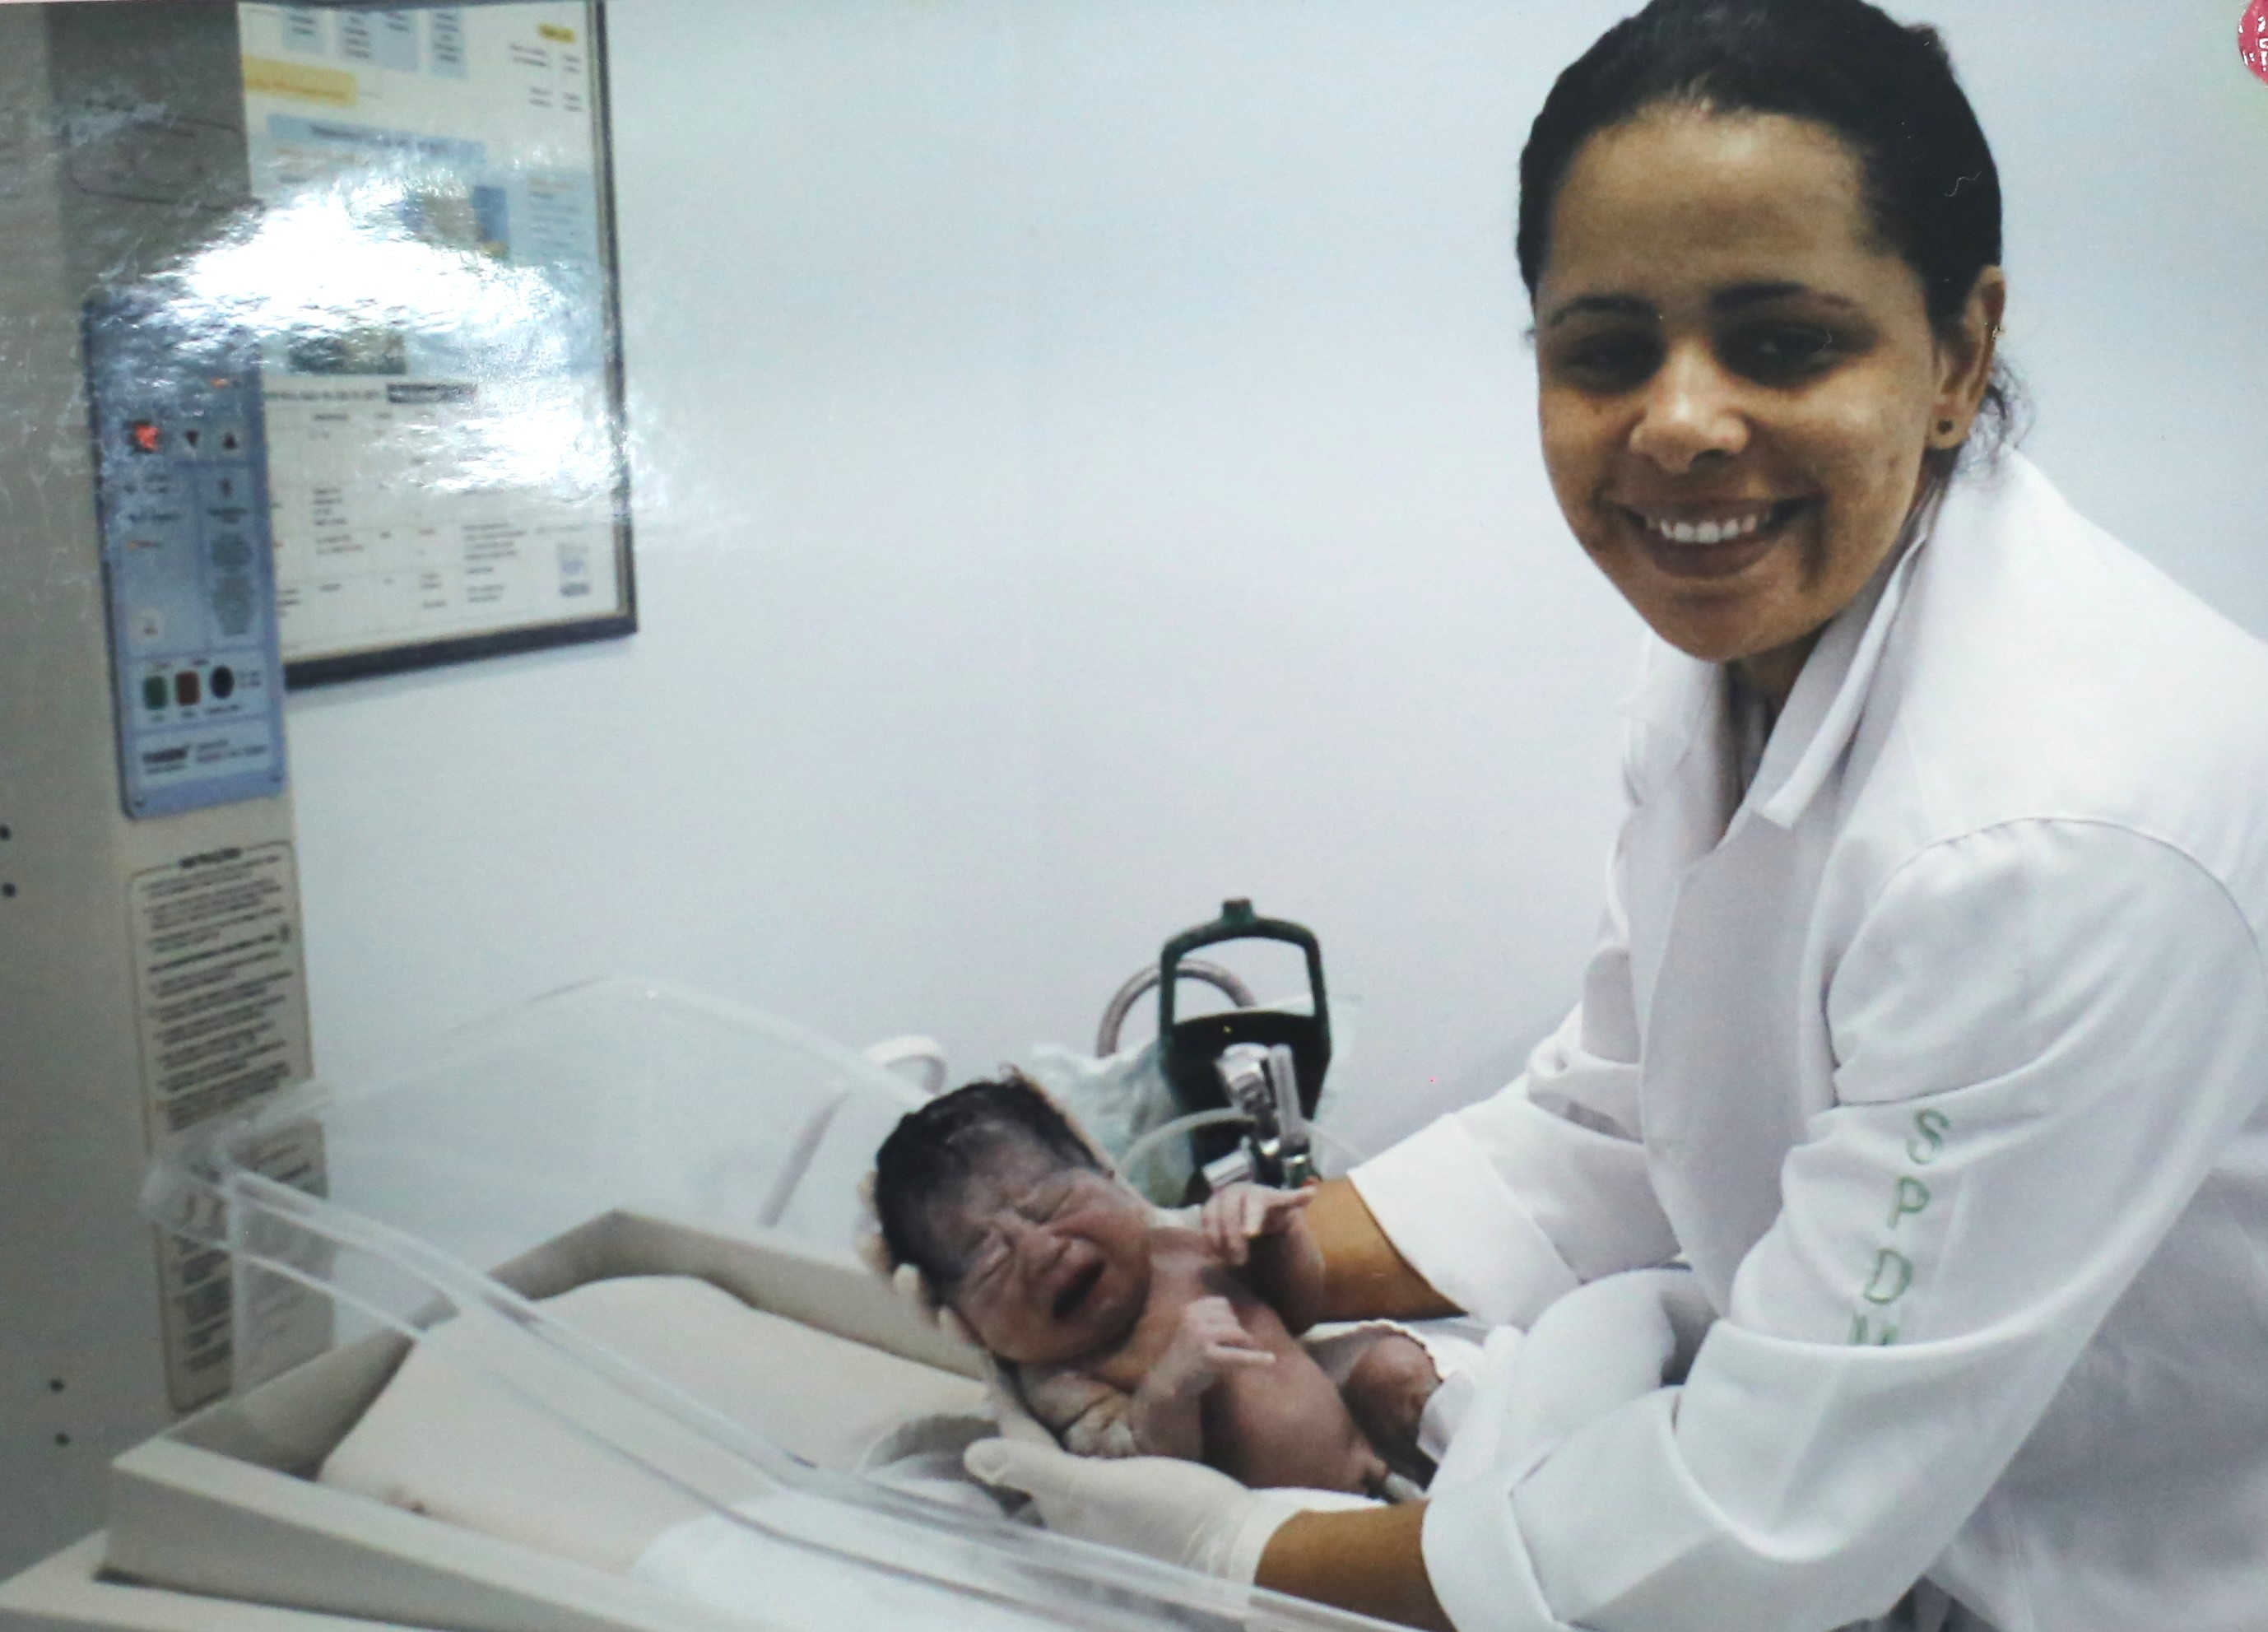 A foto mostra uma mulher jovem de cabelos pretos e presos; usando um jaleco branco; ela está inclinada sobre um berço hospitalar e segura um bebê recém-nascido, que chora